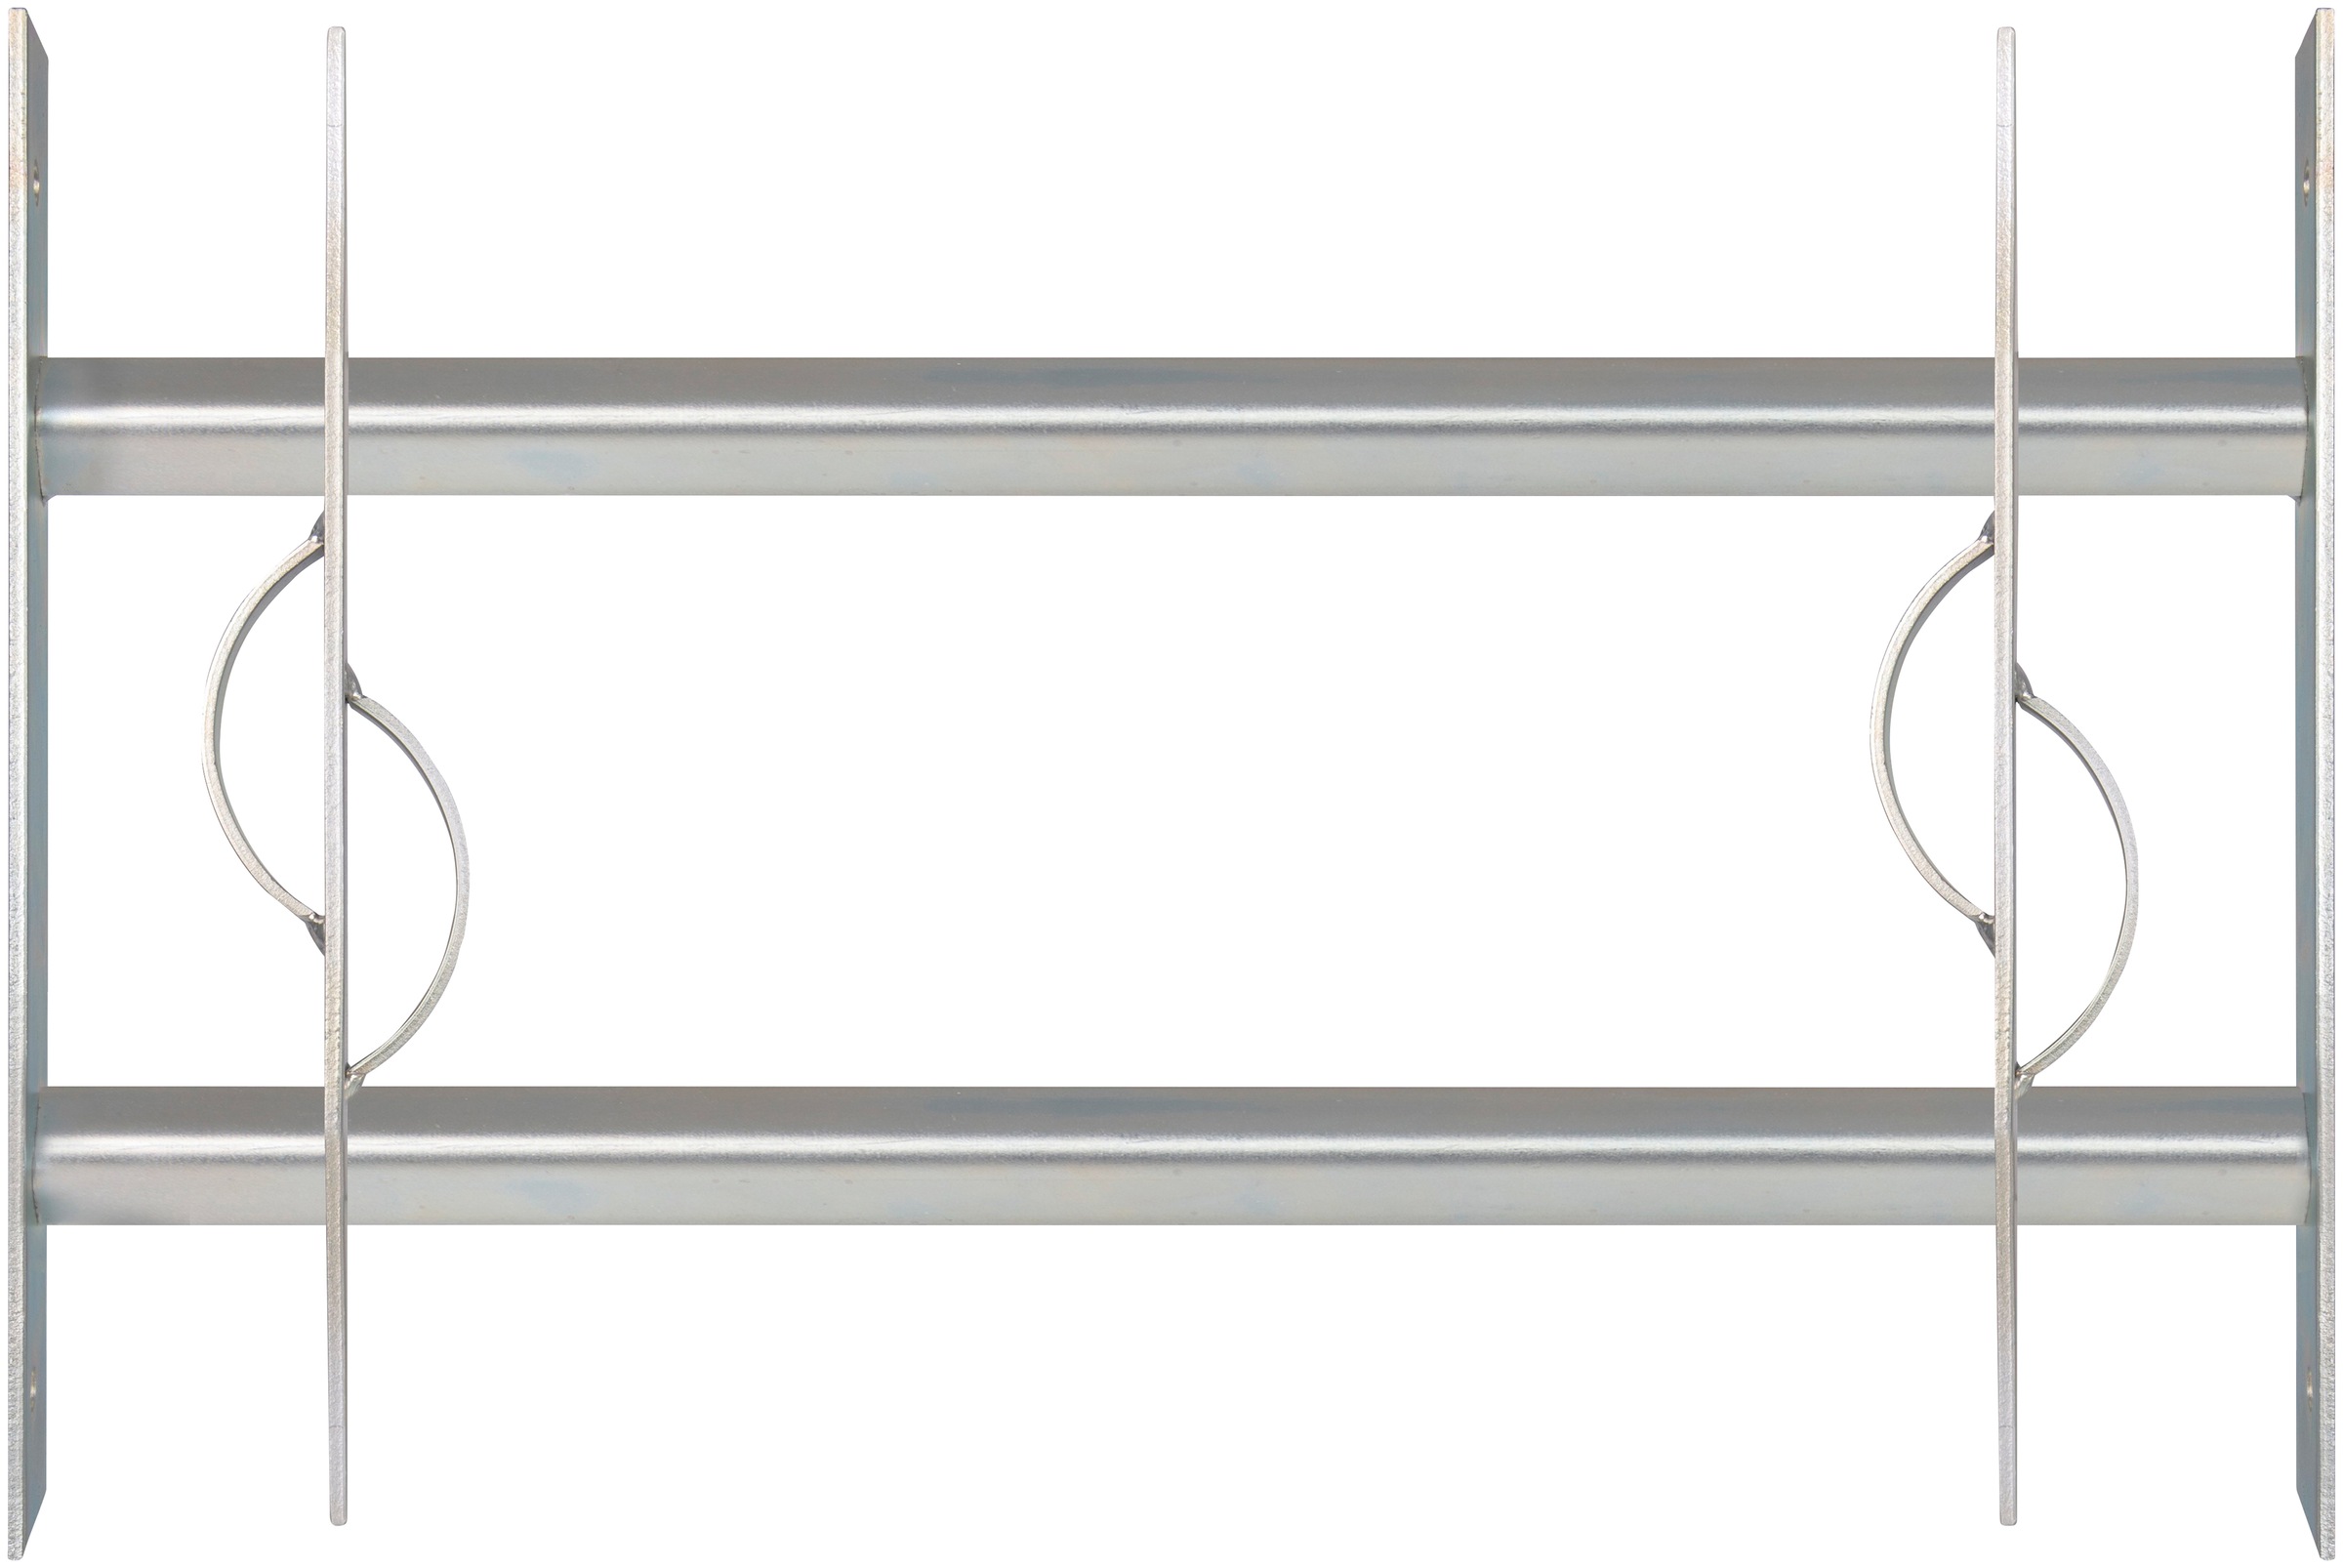 Alberts Fensterschutzgitter "Secorino Style", Breite ausziehbar 50-65 cm, versch. Höhen